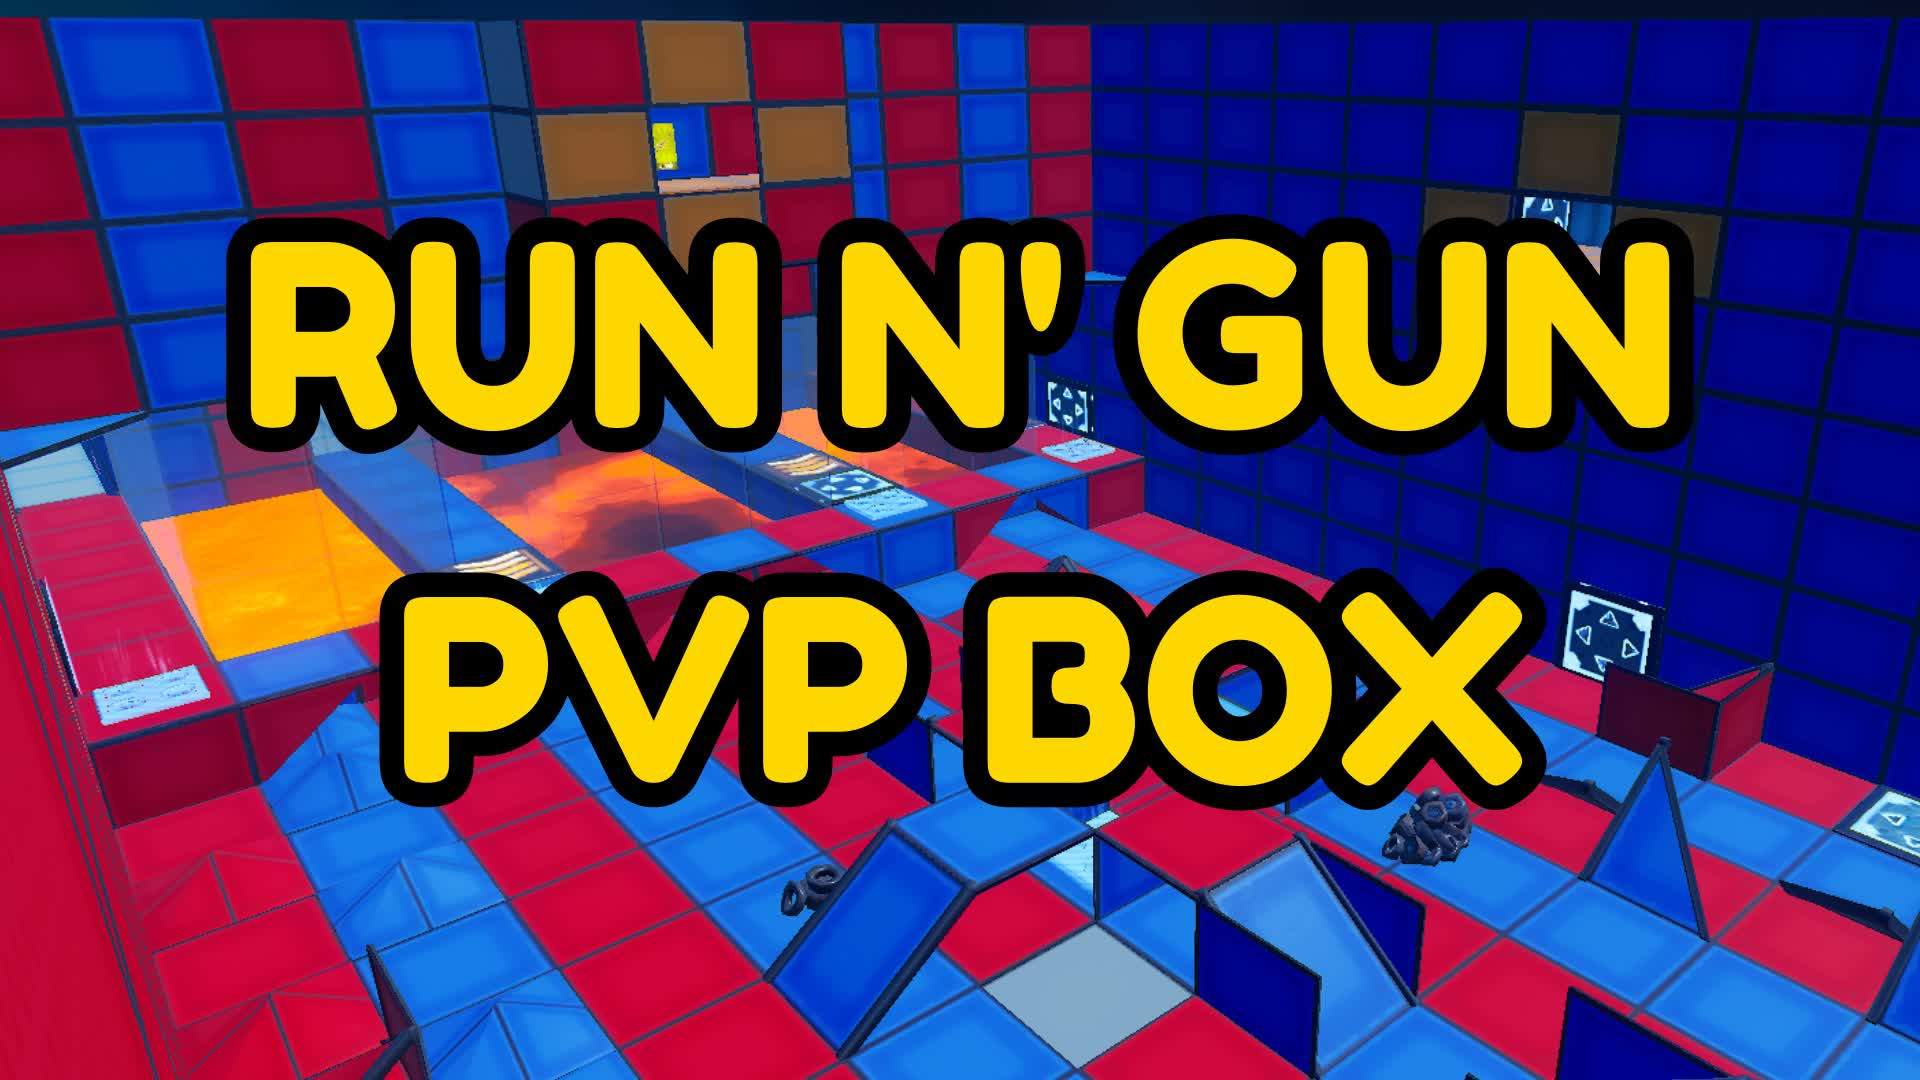 RUN N' GUN PVP BOX